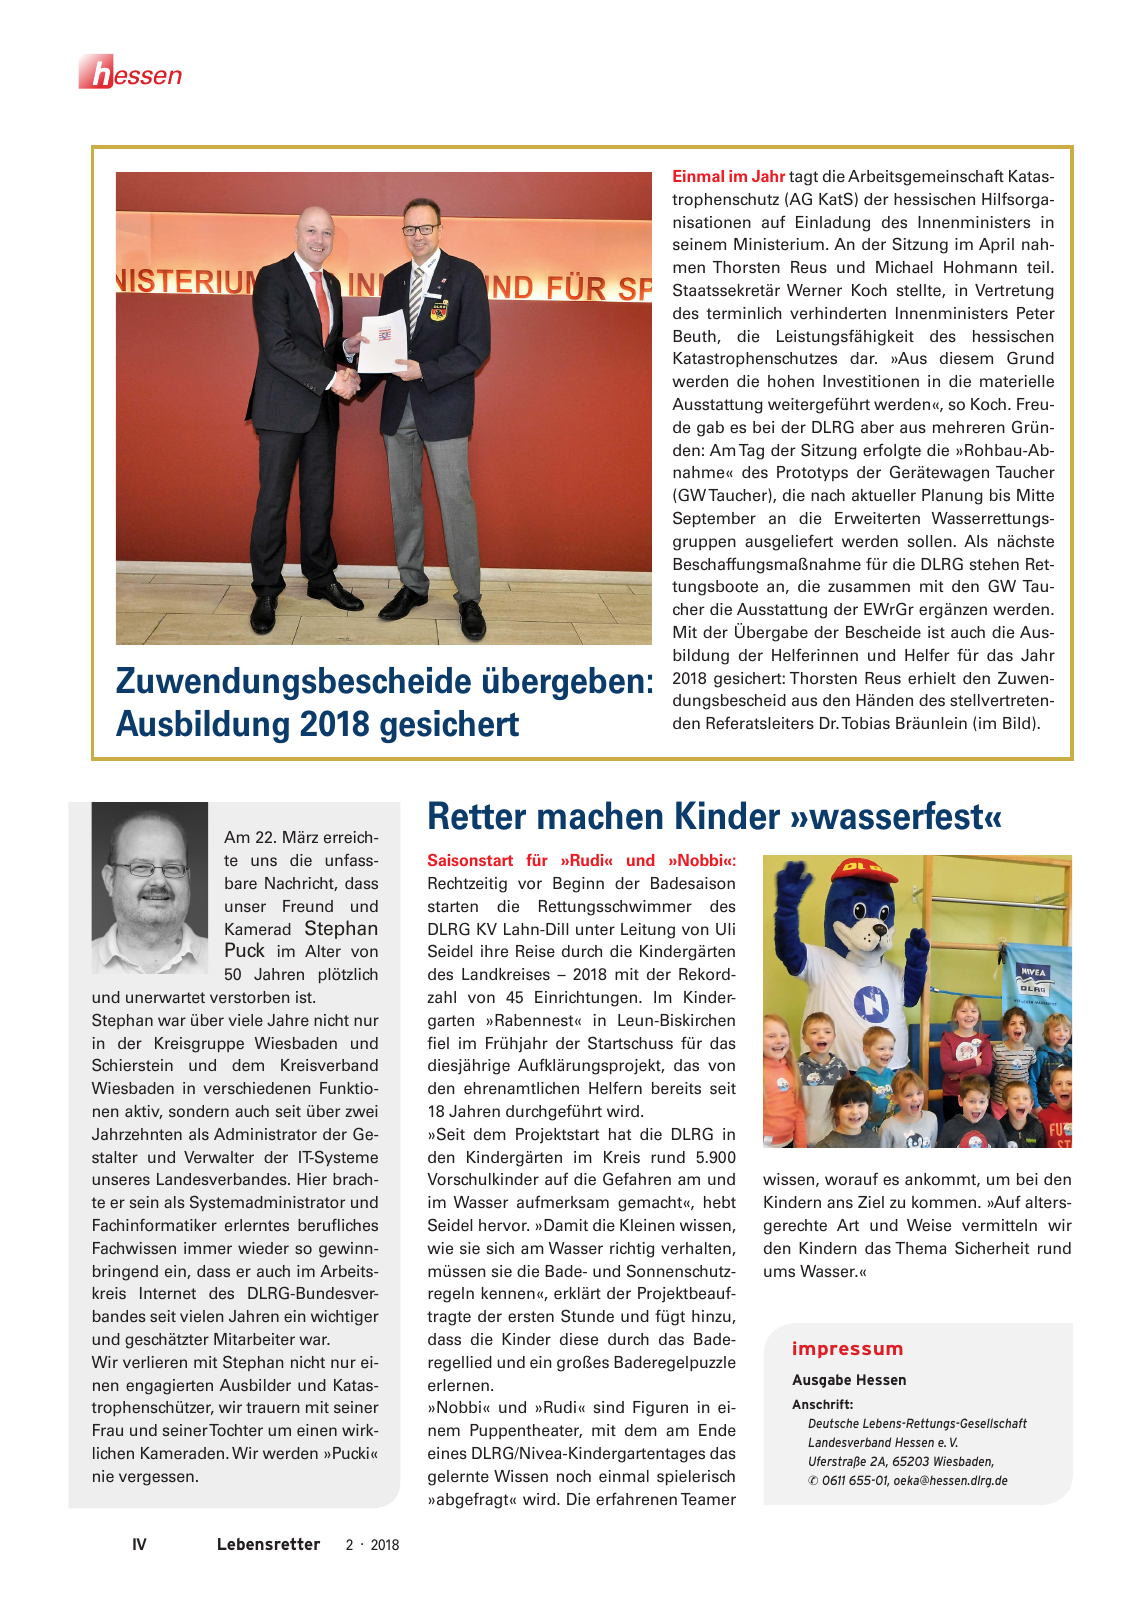 Vorschau Lebensretter 2/2018 - Regionalausgabe Hessen Seite 6